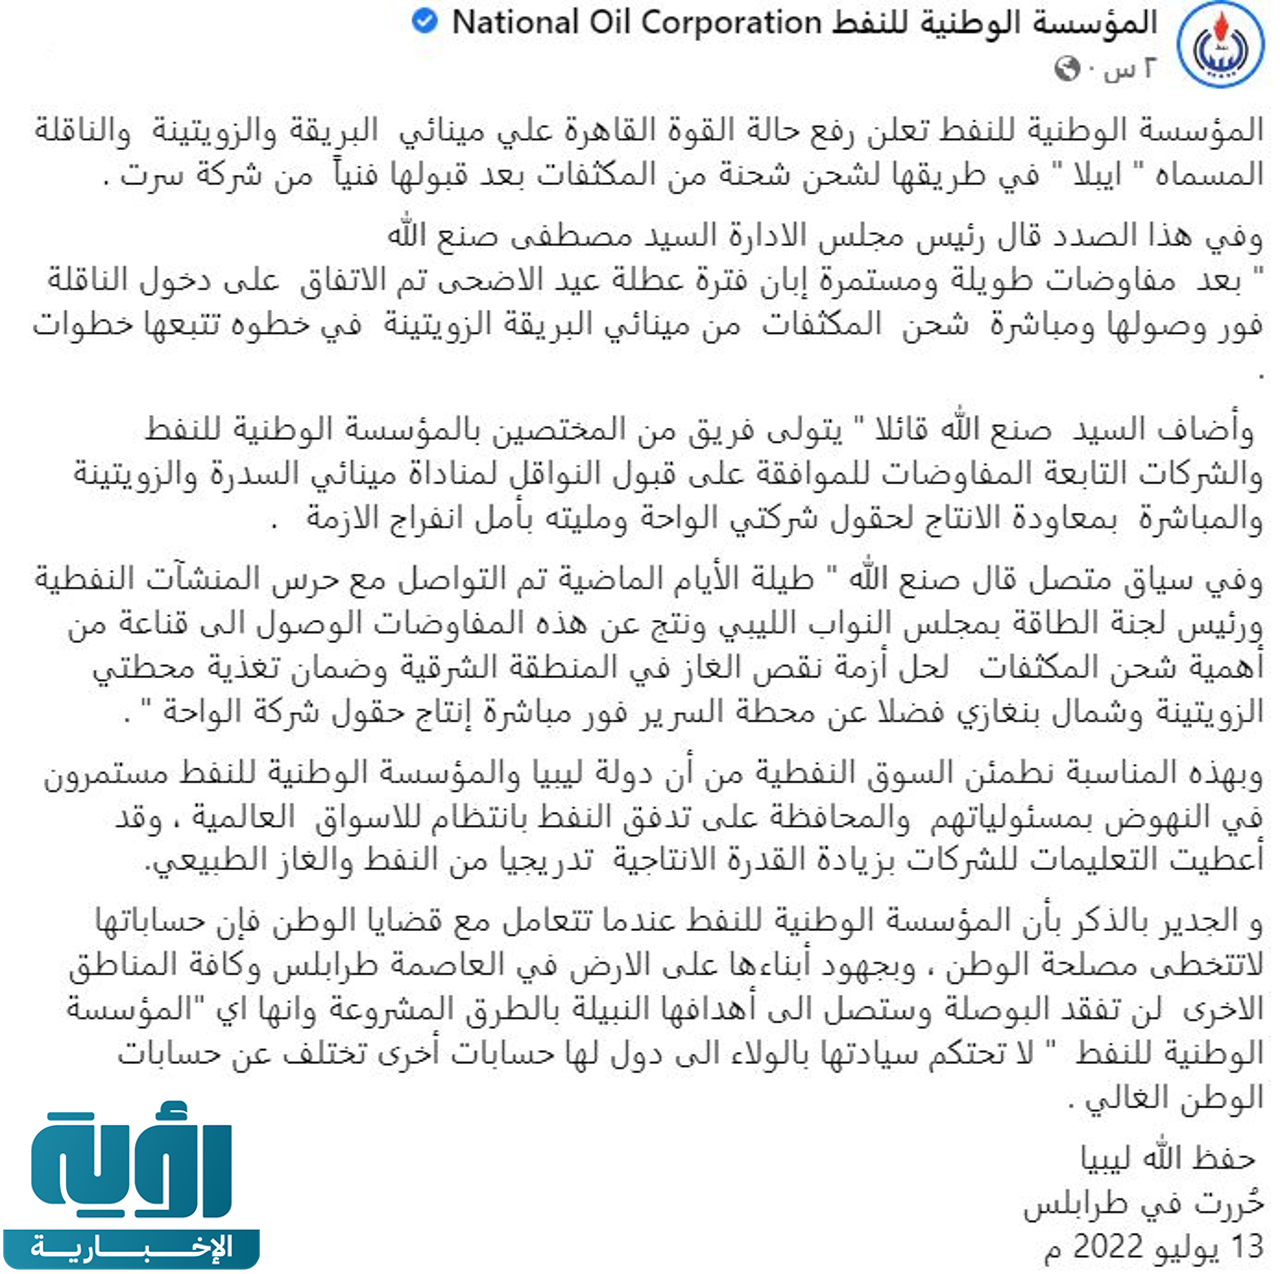 بيان المؤسسة الوطنية للنفط في ليبيا بشأن رفع حالة القوة القاهرة عن مينائي البريقة والزويتينة